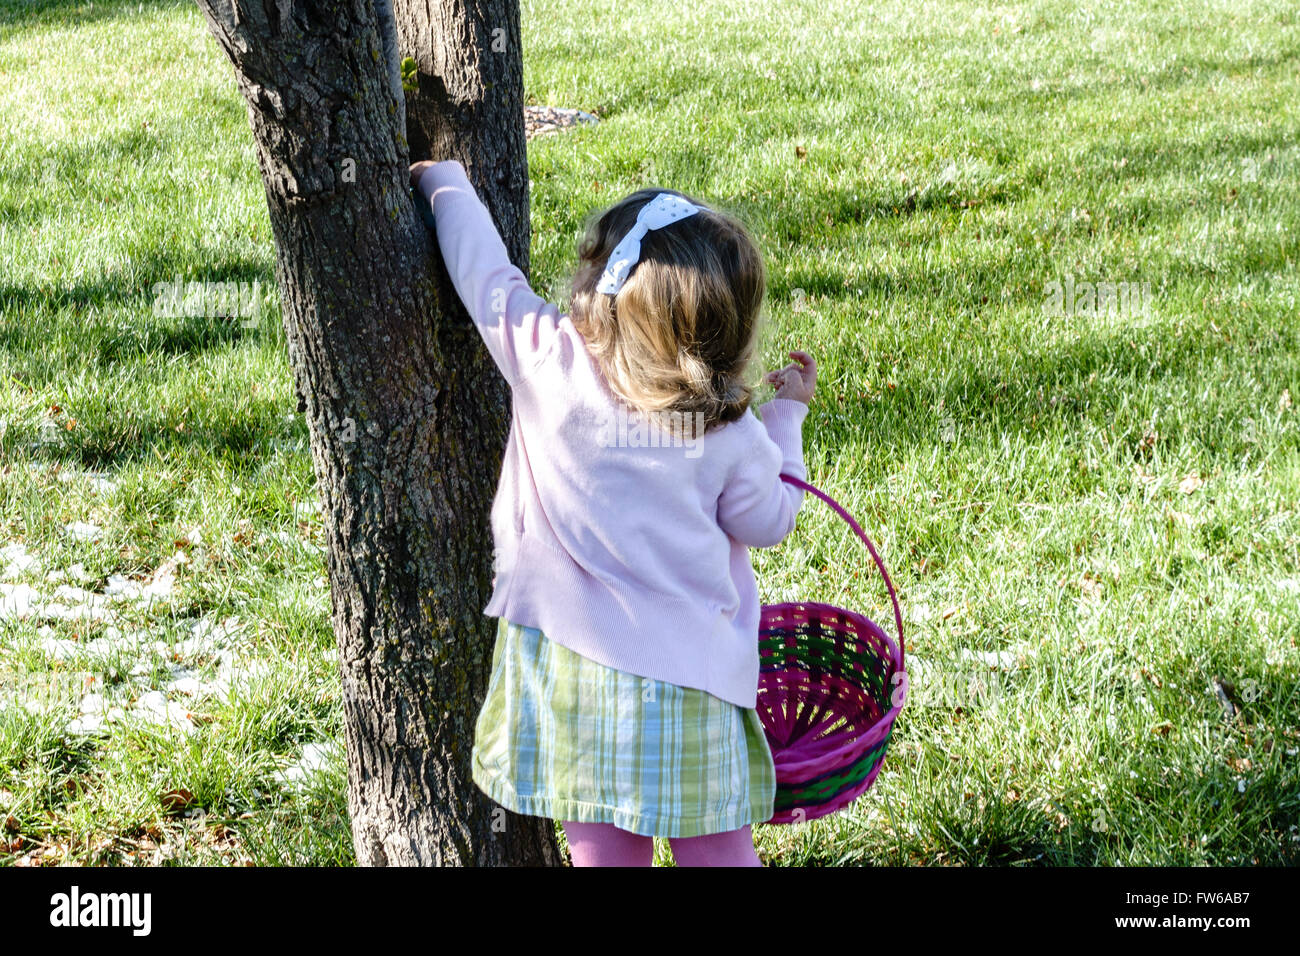 Ein zweijähriges kaukasisches Kleinkind jagt Ostereier und findet eines im Schritt eines Baumes. Stockfoto